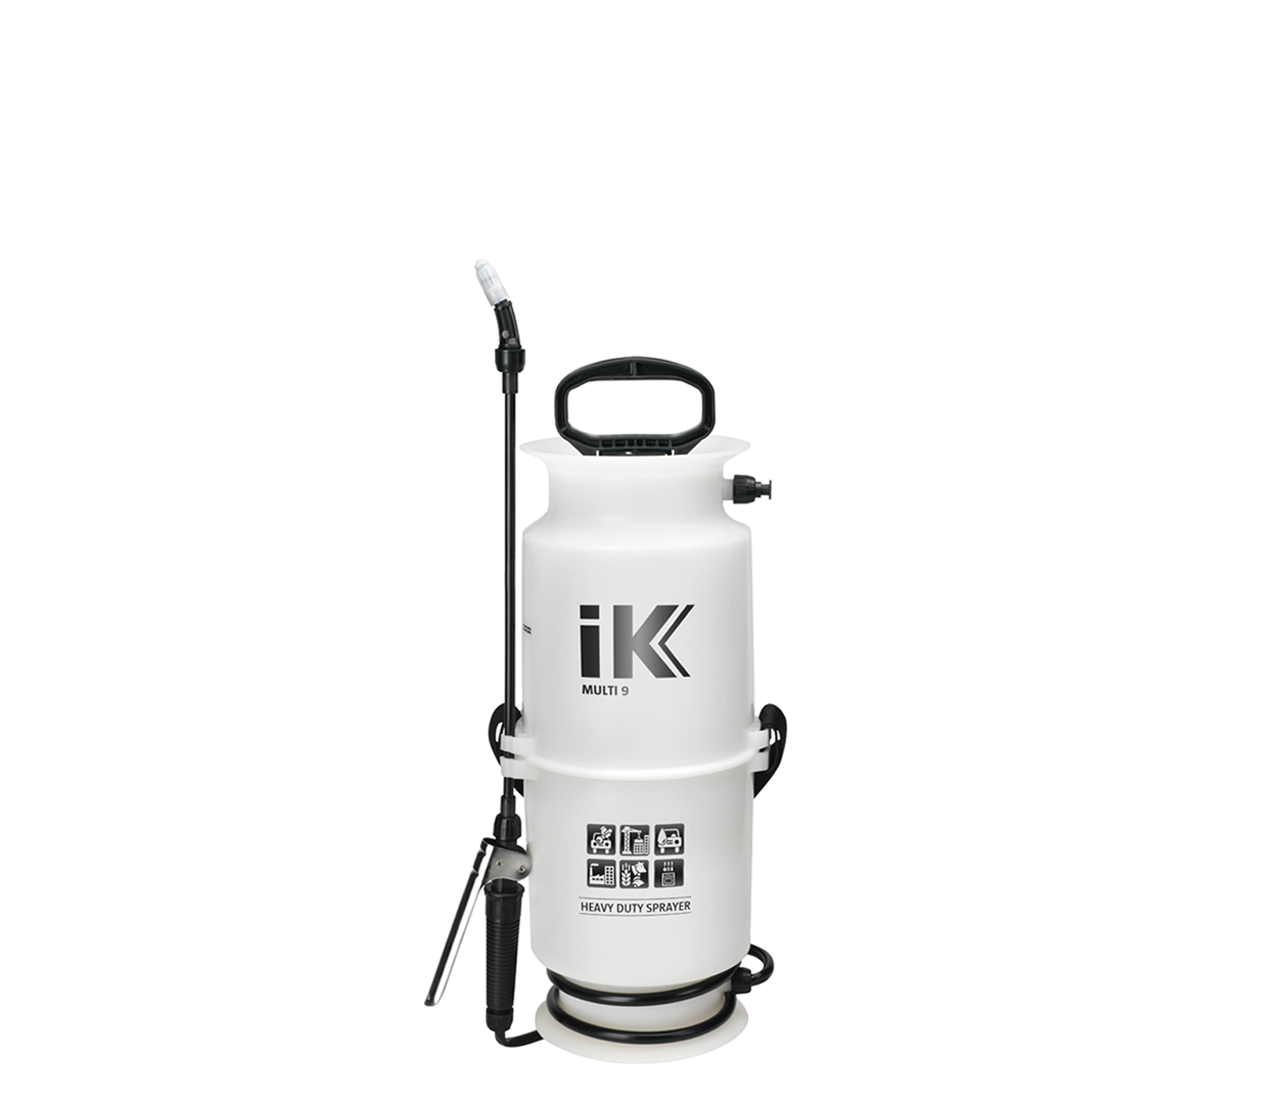 IK 1.5 Gallon Multi 9 Professional Compression Sprayer